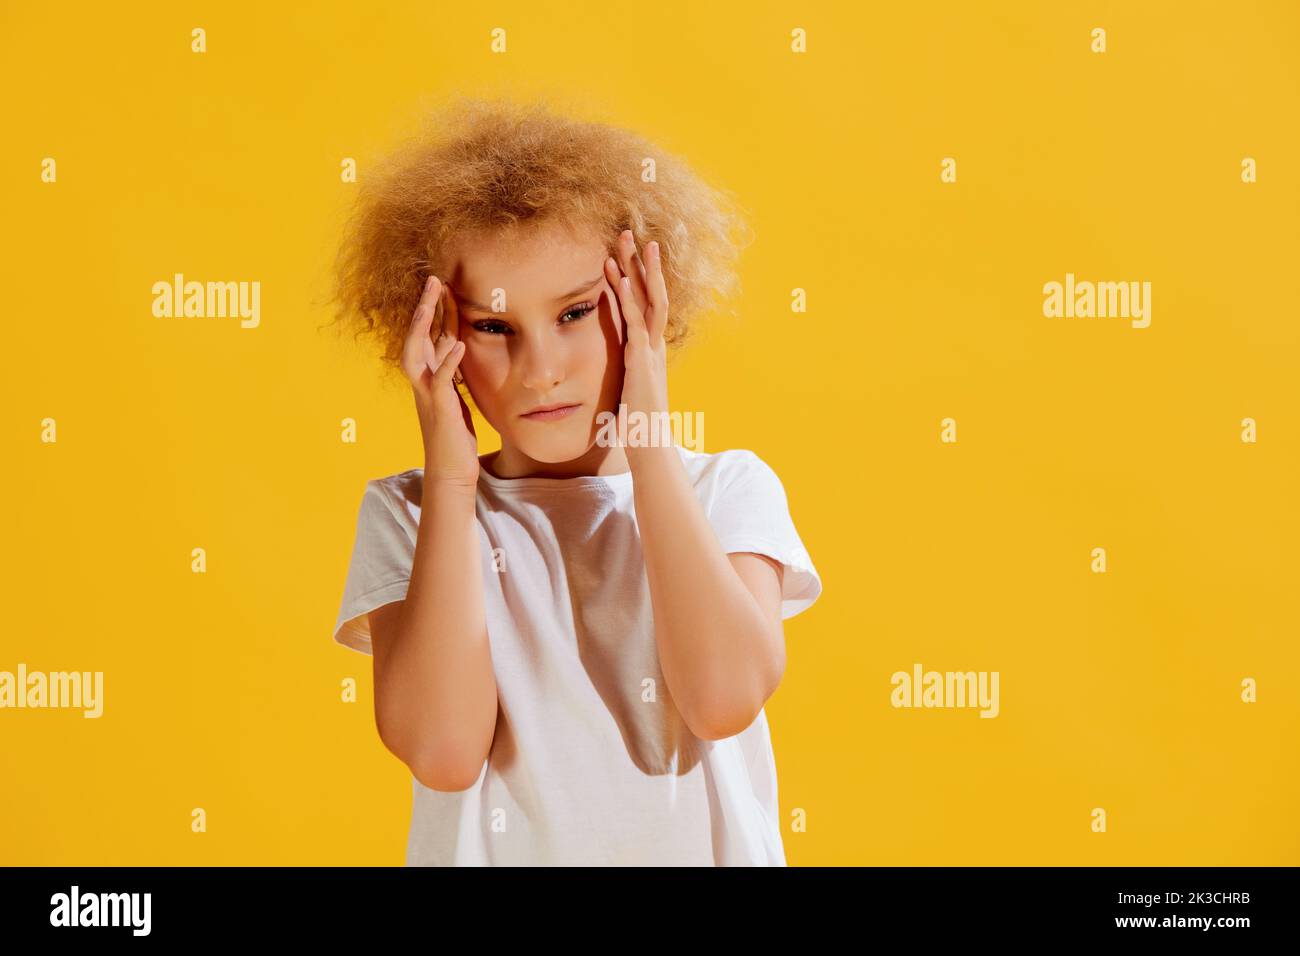 Schmerzen. Trauriges kleines Mädchen, das ihren Kopf mit Händen auf gelbem Hintergrund hält. Konzept der Kinder Emotionen, Gesundheit, Pflege, Medizin Stockfoto